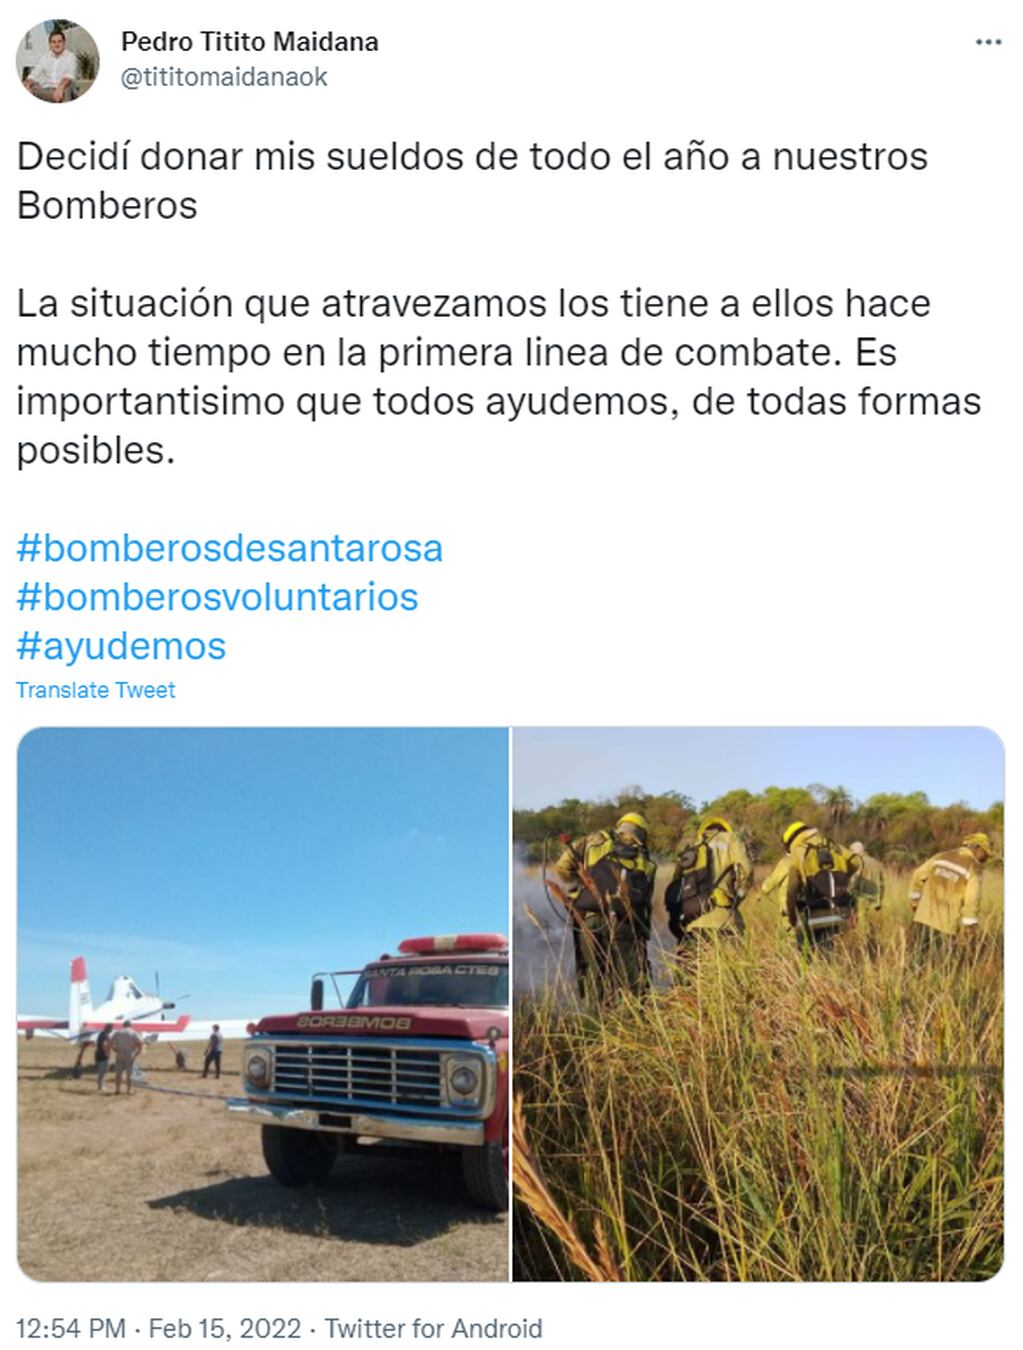 El intendente de Santa Rosa, Corrientes, donará su sueldo a bomberos voluntarios.